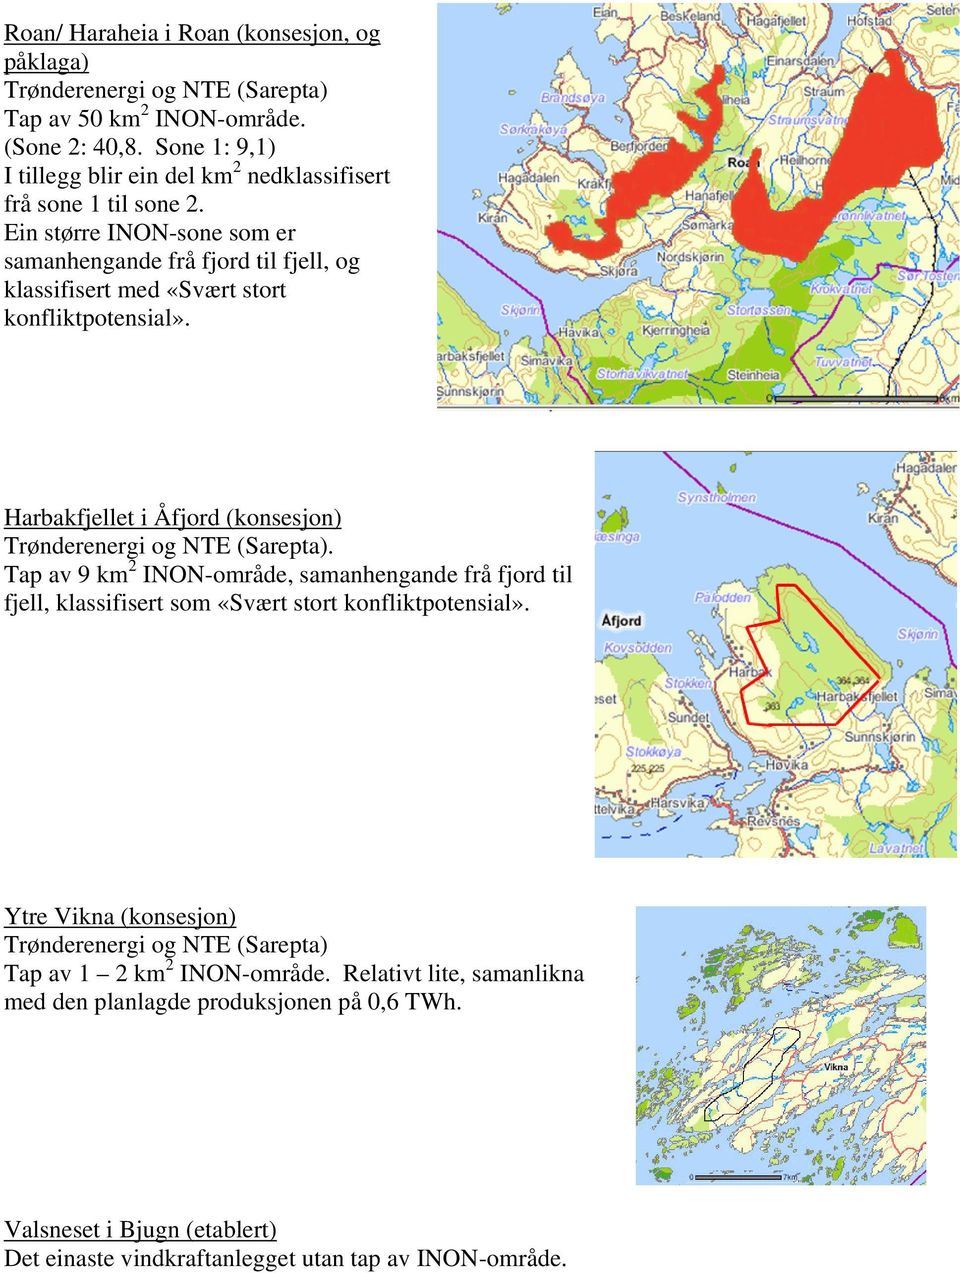 Ein større INON-sone som er samanhengande frå fjord til fjell, og klassifisert med «Svært stort konfliktpotensial». Harbakfjellet i Åfjord (konsesjon) Trønderenergi og NTE (Sarepta).